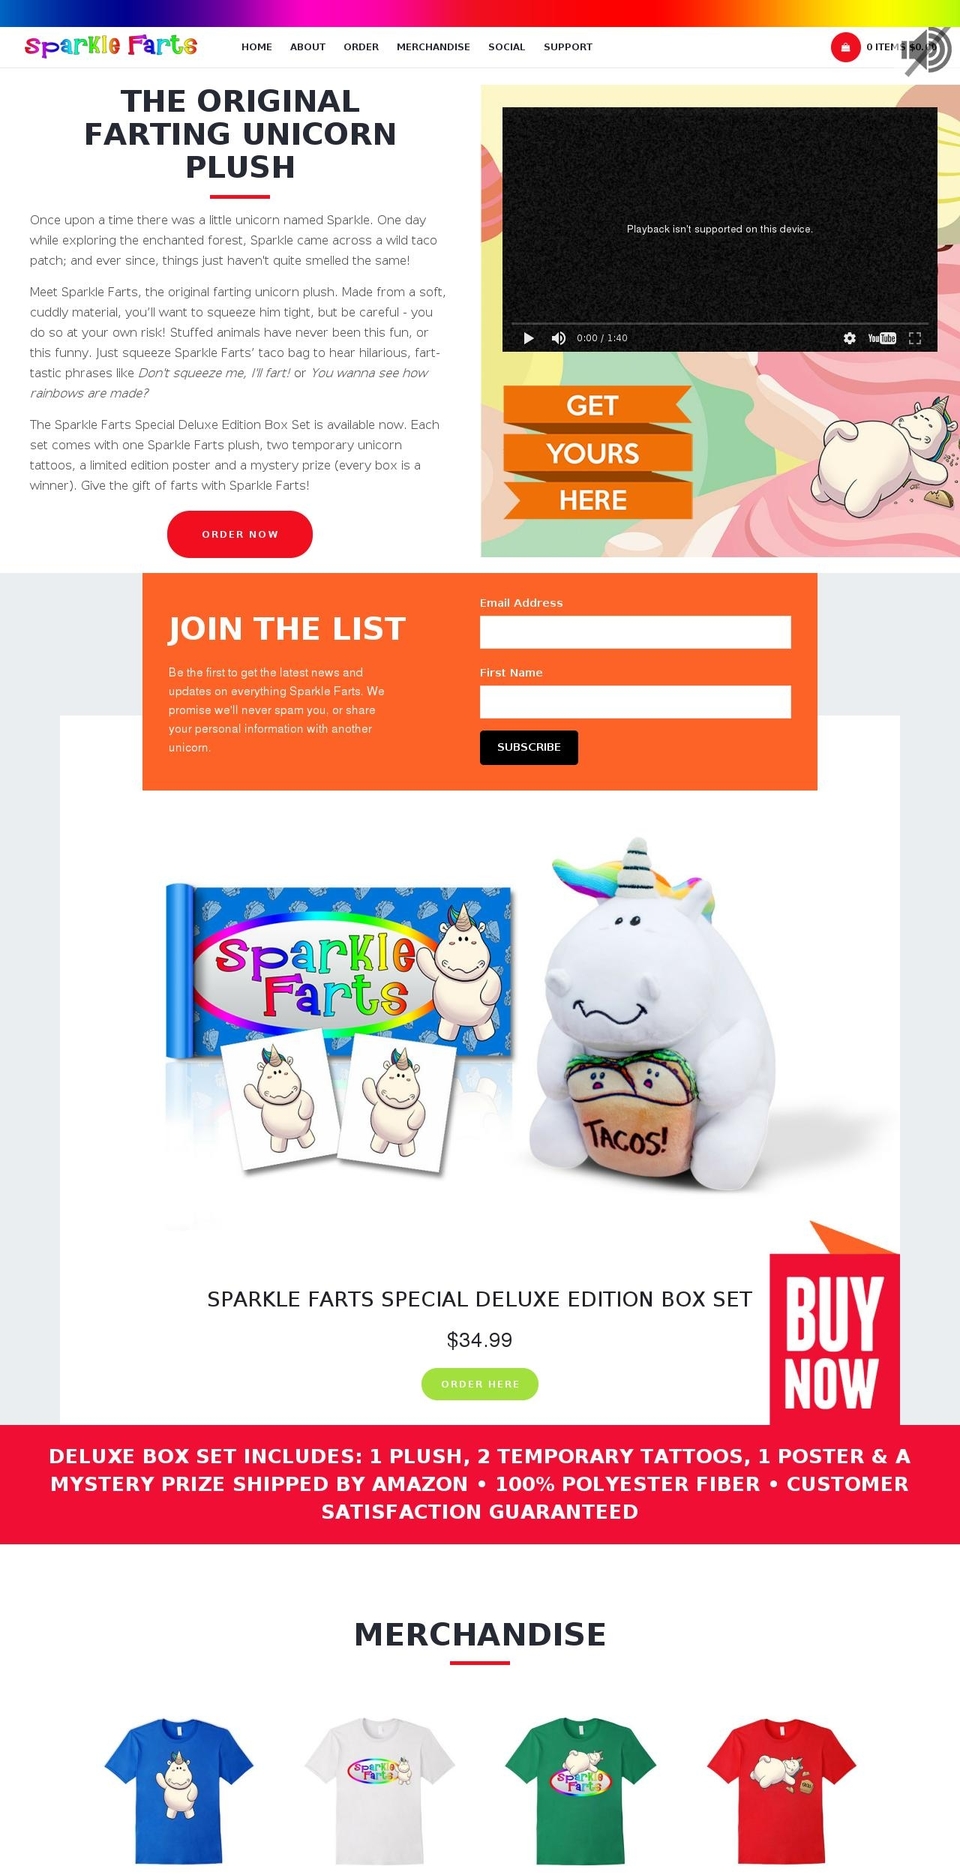 Spark Shopify theme site example sparklefartstoys.com